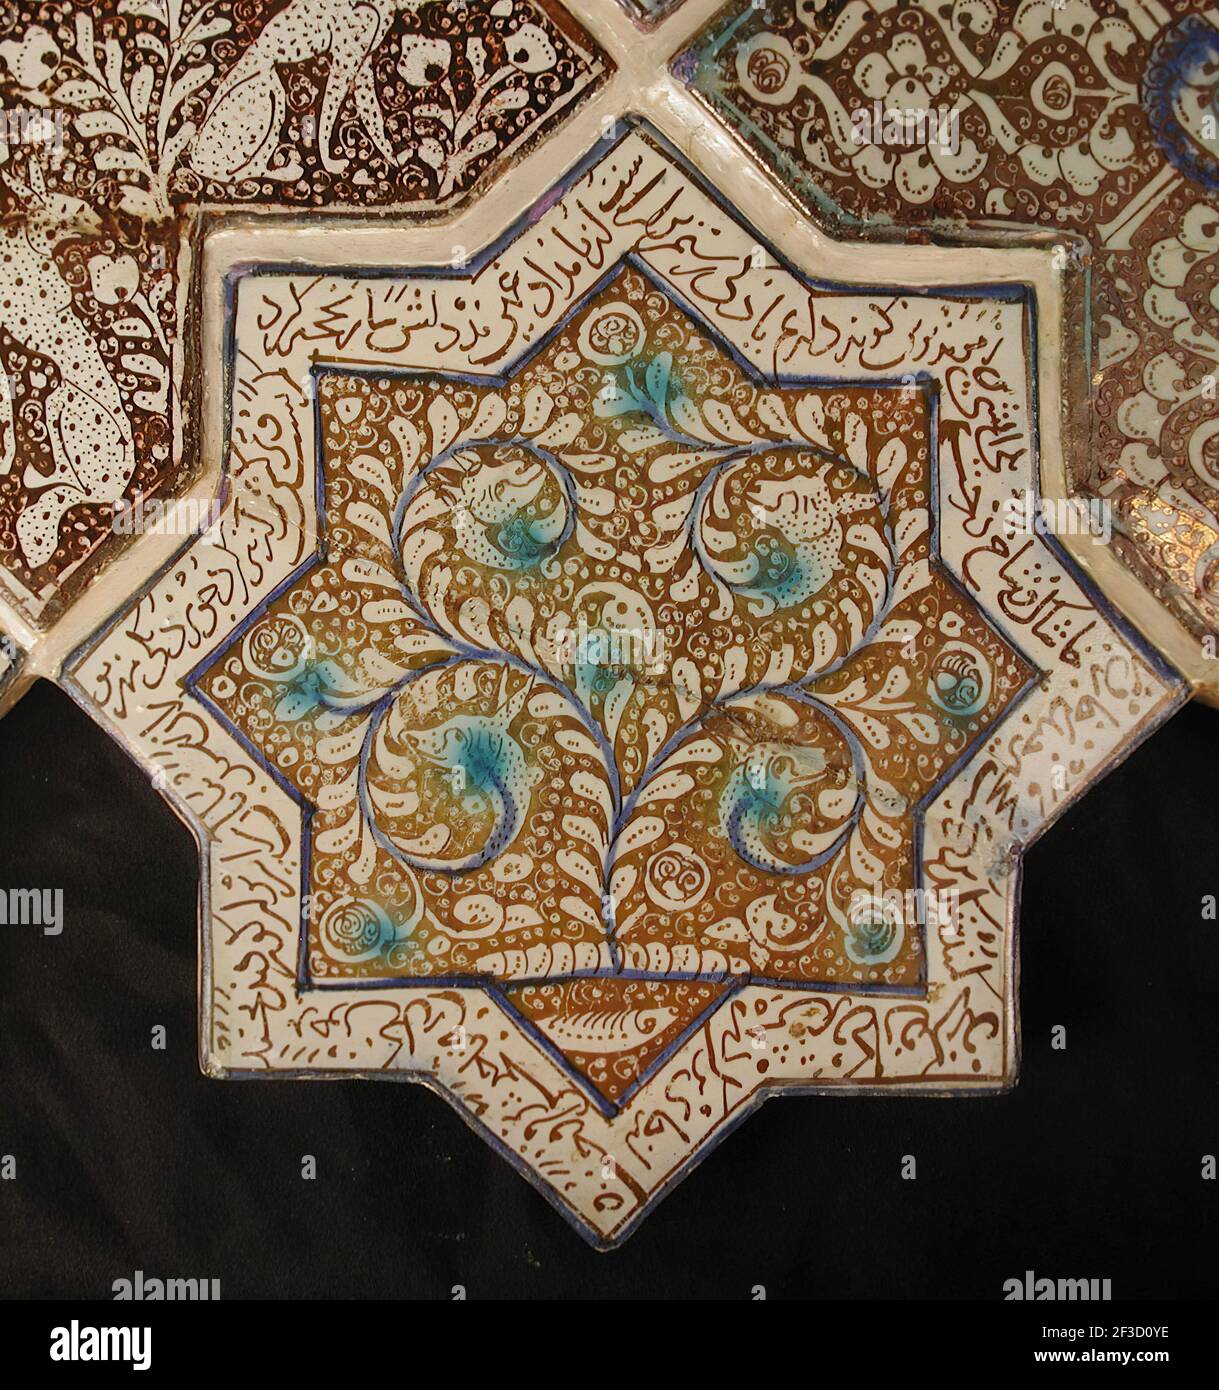 Sternförmige Fliese, Iran, 13th-14th Jahrhundert. Waq-waq Entwurf der Pflanze, deren Ranken sich zu Tierköpfen entwickeln, mit Text aus dem Shahnama, in dem Rustam, einer der großen Helden der Geschichte &#X2019;, in der Schlacht engagiert wird. Aus einem Ilkhanid-Gebäude. Stockfoto